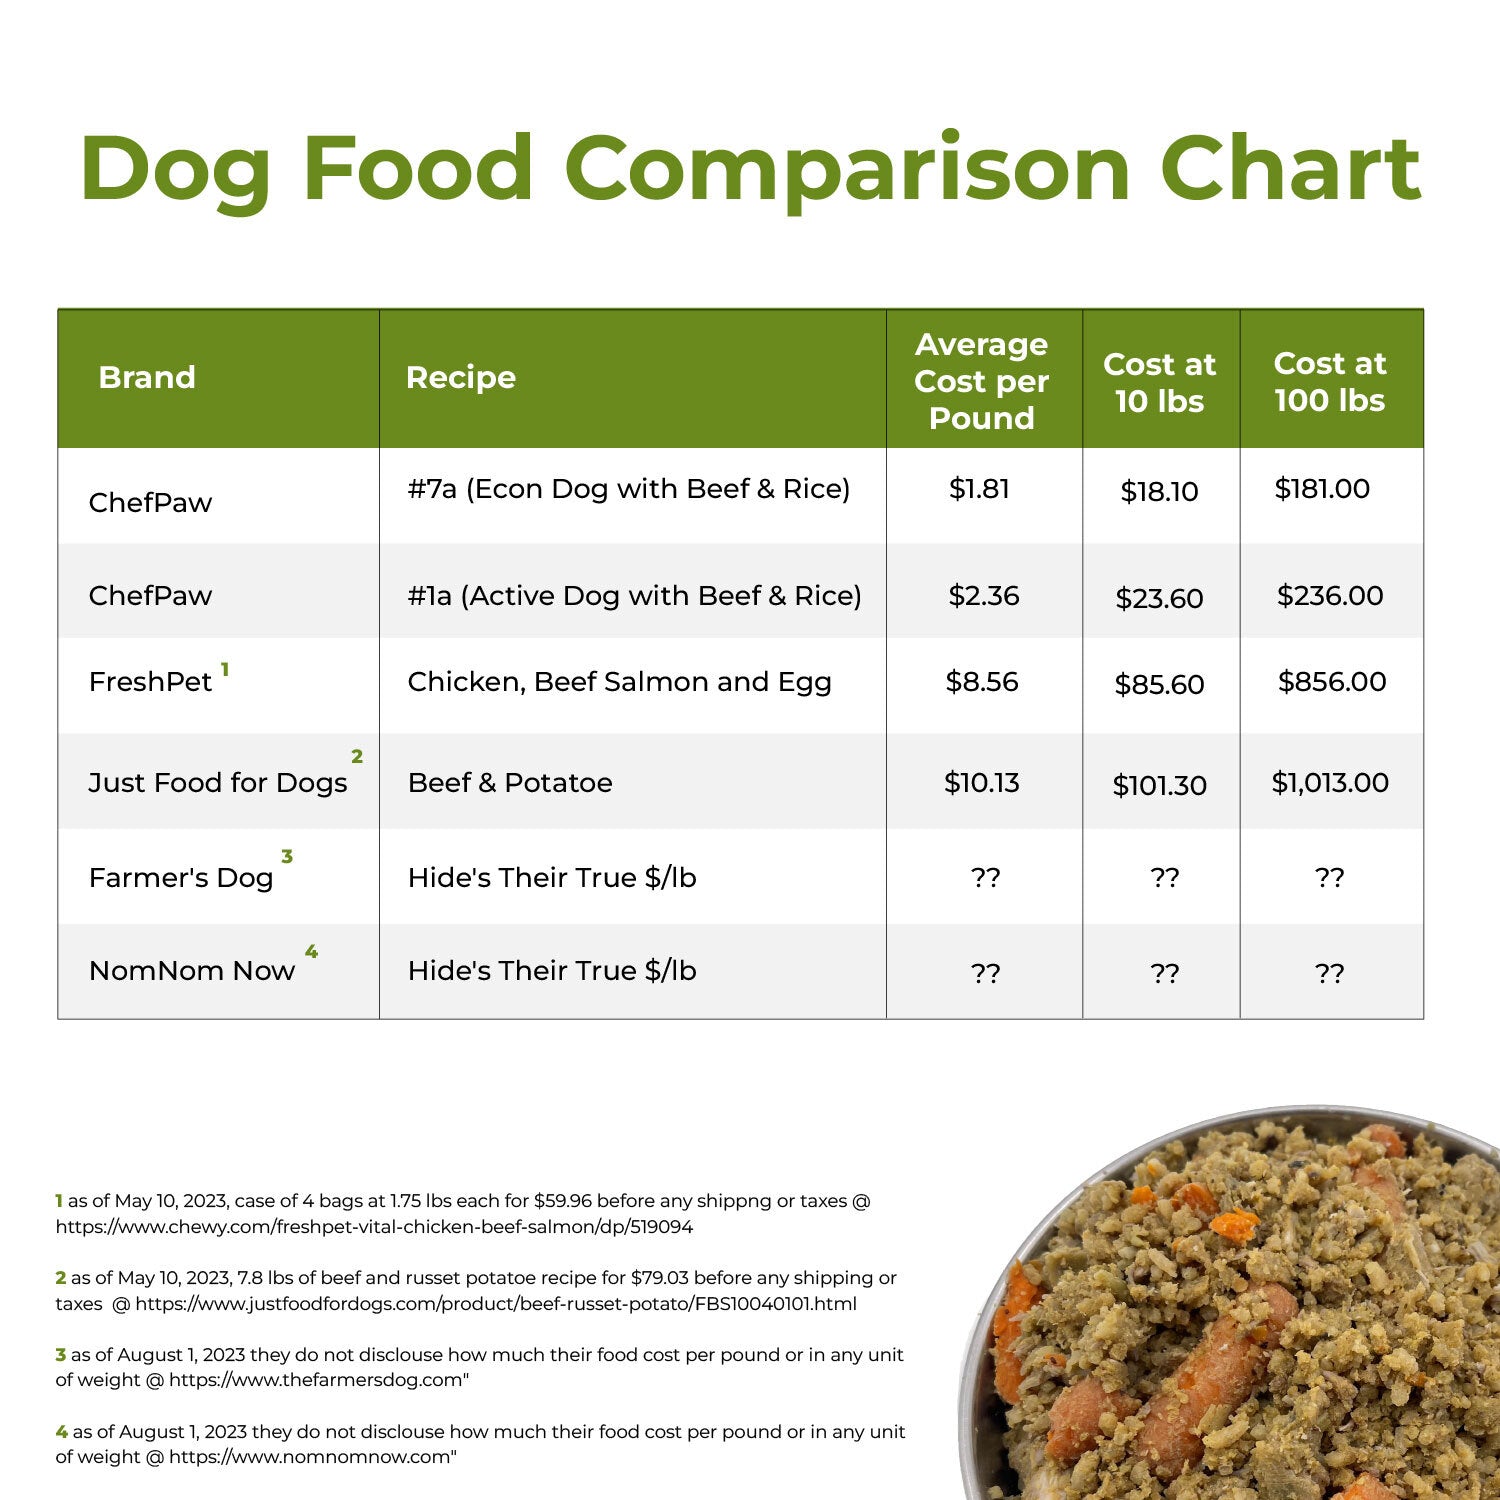 DID YOU FEED THE DOG? - Dog Feeding Reminder, The Original Feed